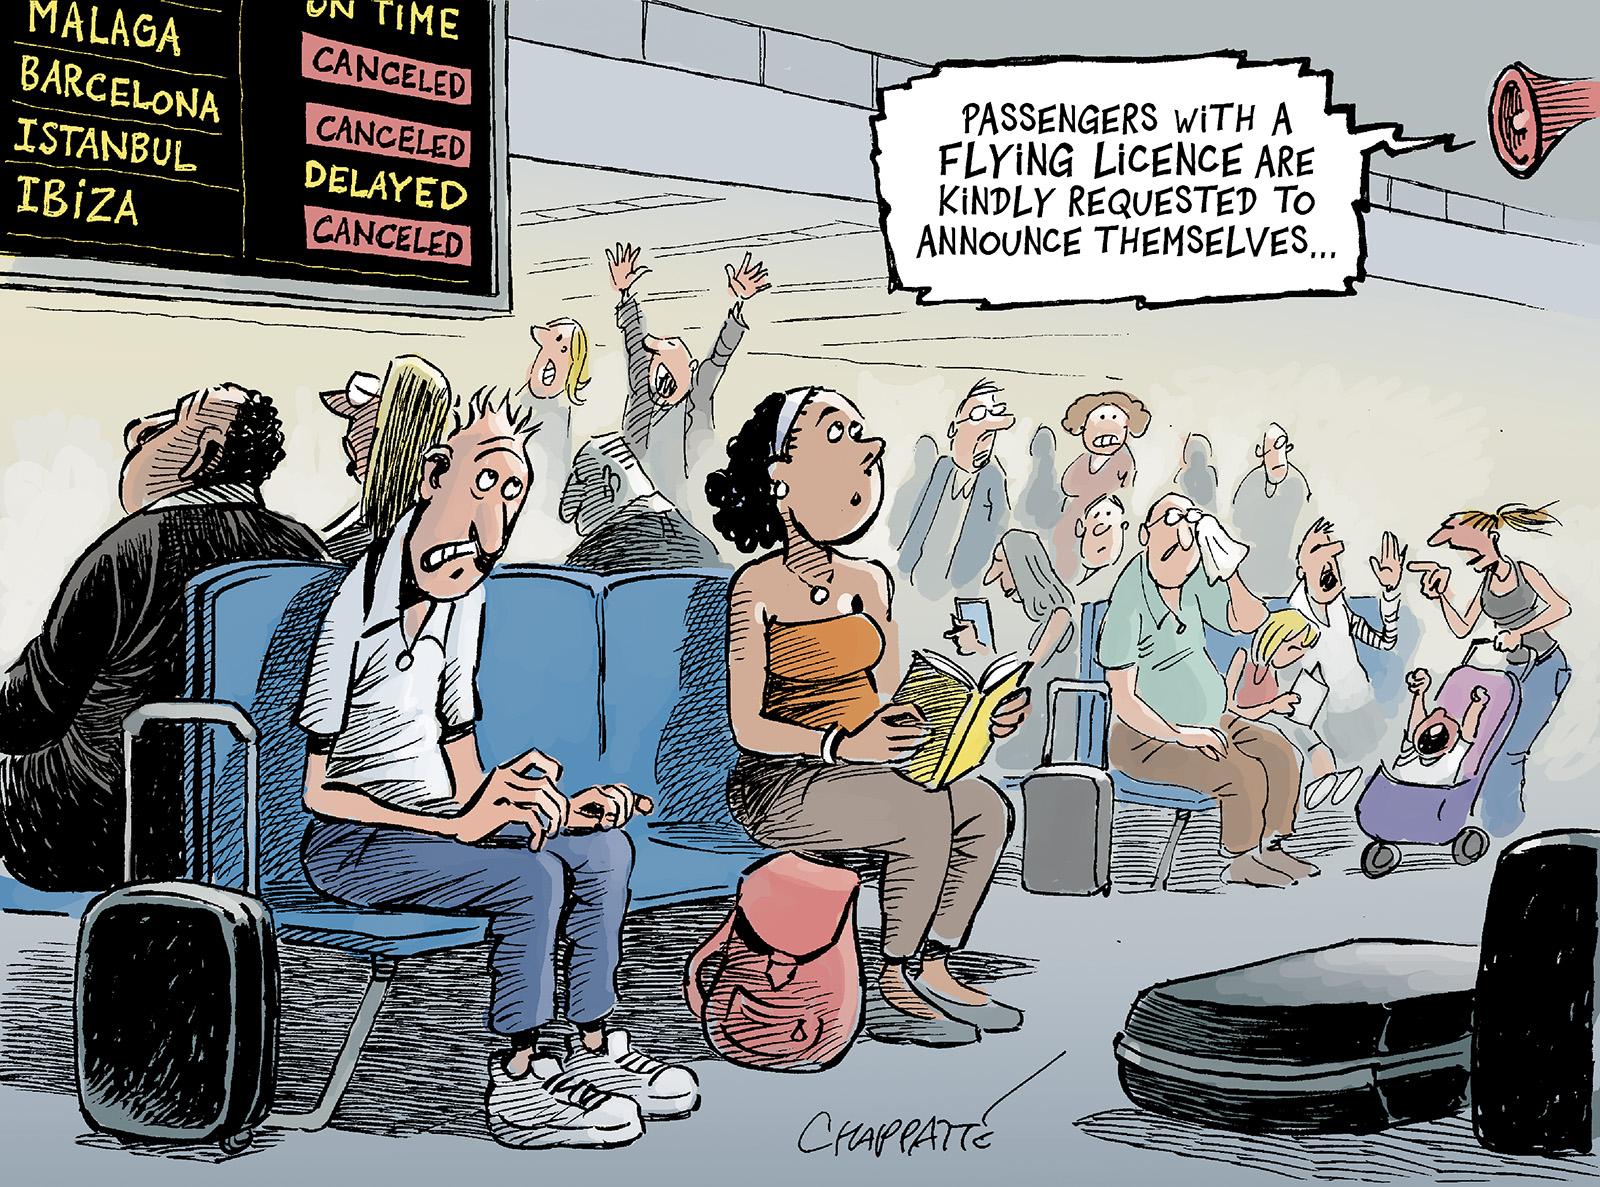 Air travel chaos